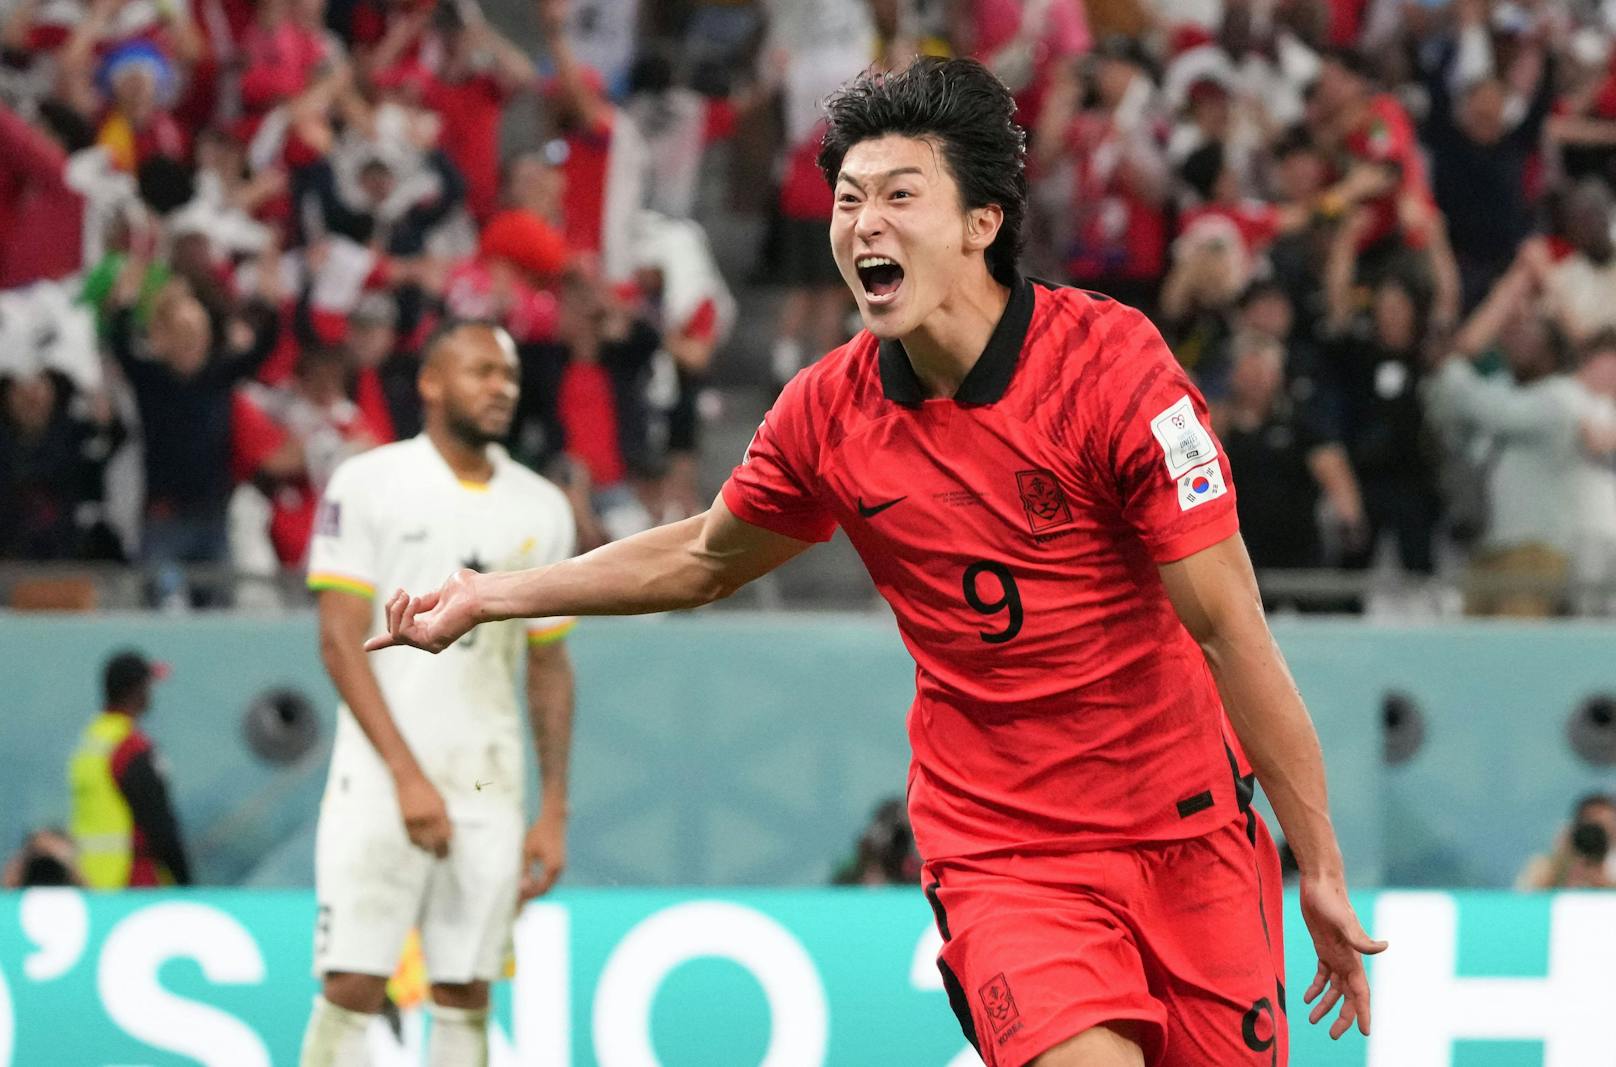 <strong>Gue-Sung Cho:</strong> Der Südkoreaner konnte im laufenden Bewerb seine Torgefahr unter Beweis stellen, traf in zwei Einsätzen zweimal. Derzeit steht der 24-Jährige in seiner Heimat bei Jeonbuk Hyundai unter Vertrag, könnte jedoch bald für einen europäischen Klub auf Torejagd gehen.